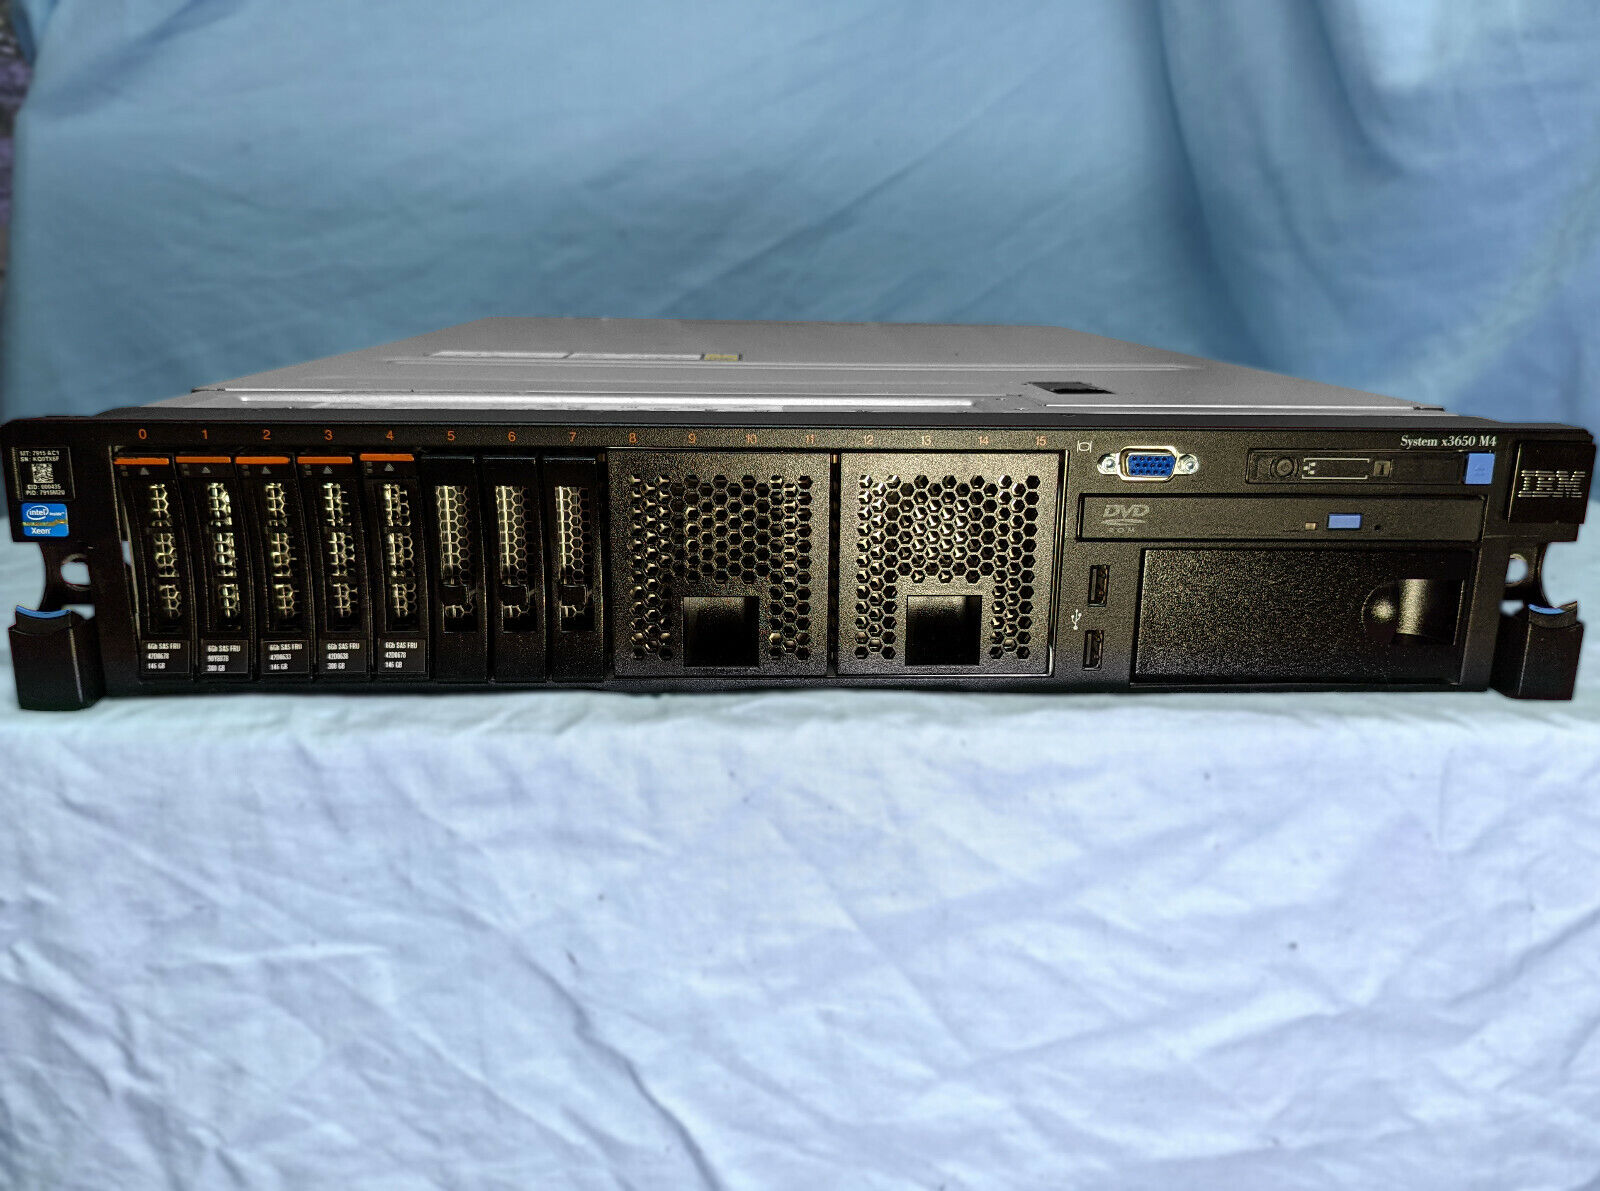 IBM 7915 X3650 M4, 2x E5-2690 2.9GHz, 8GB RAM, 2x 300GB 10K HDD, 2x 900W PSU